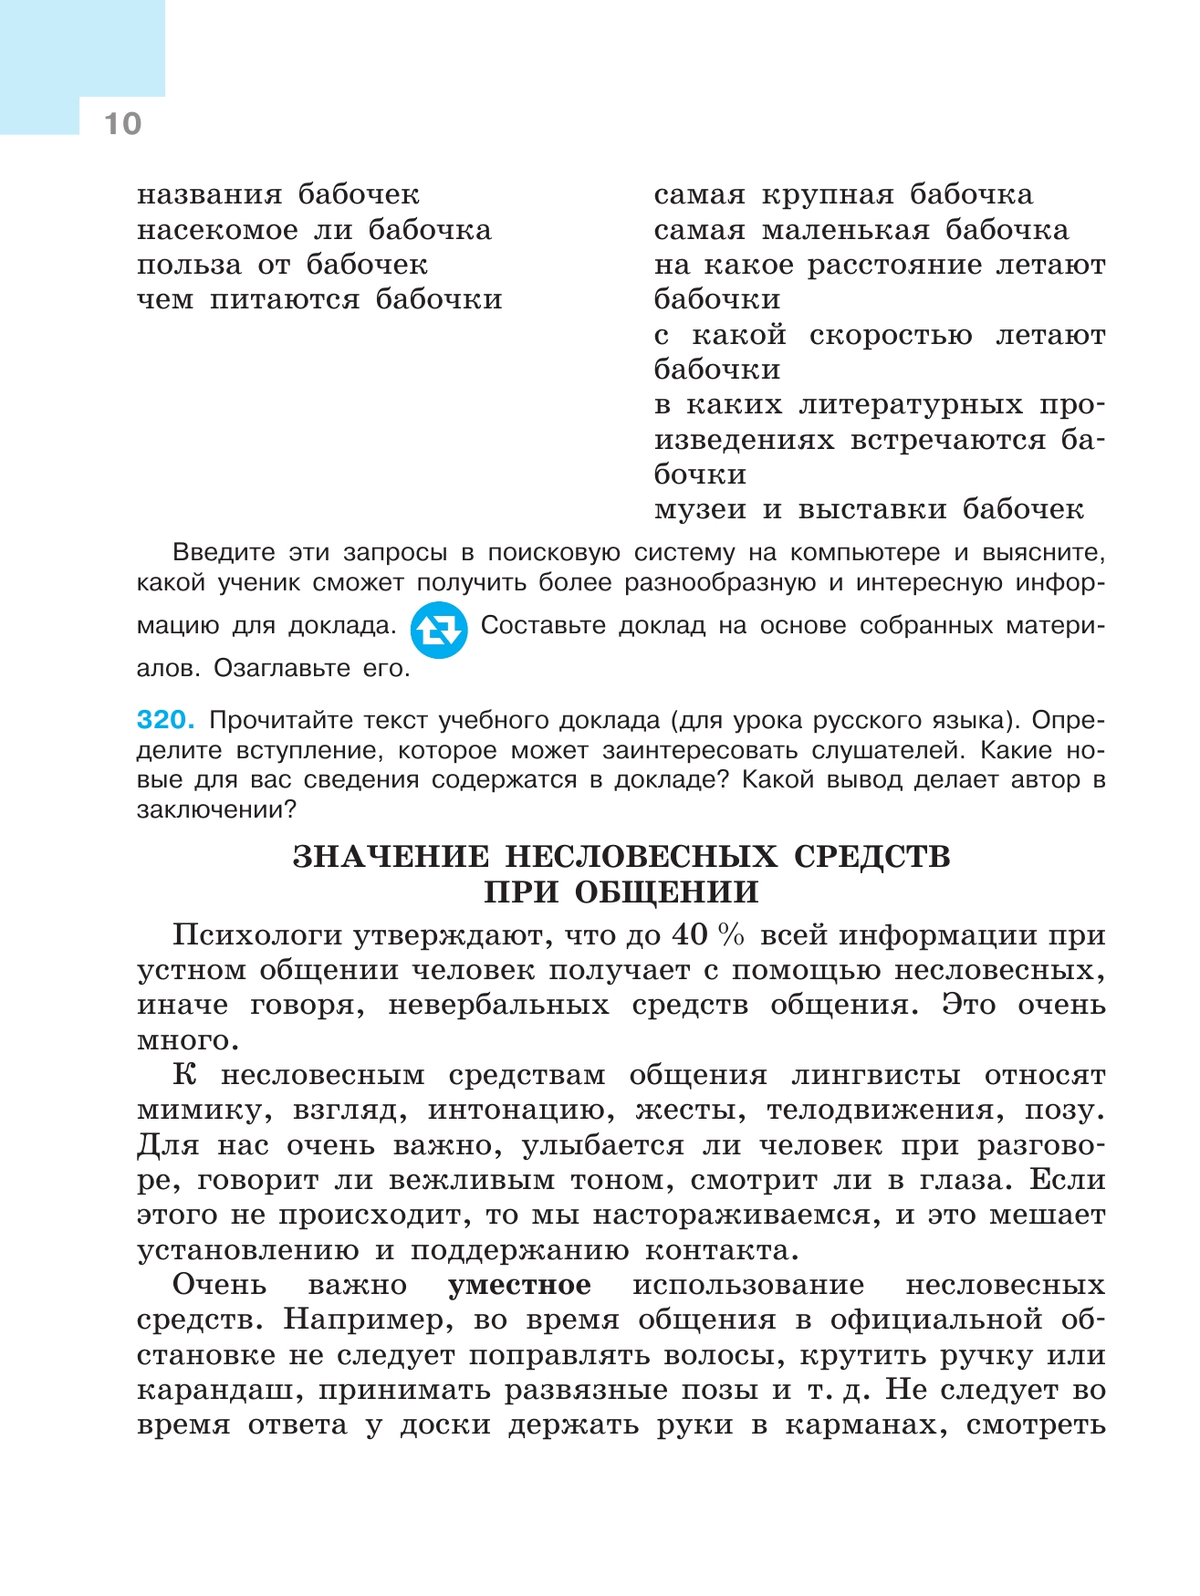 Русский язык. 7 класс. Учебник. В 2 ч. Часть 2 8